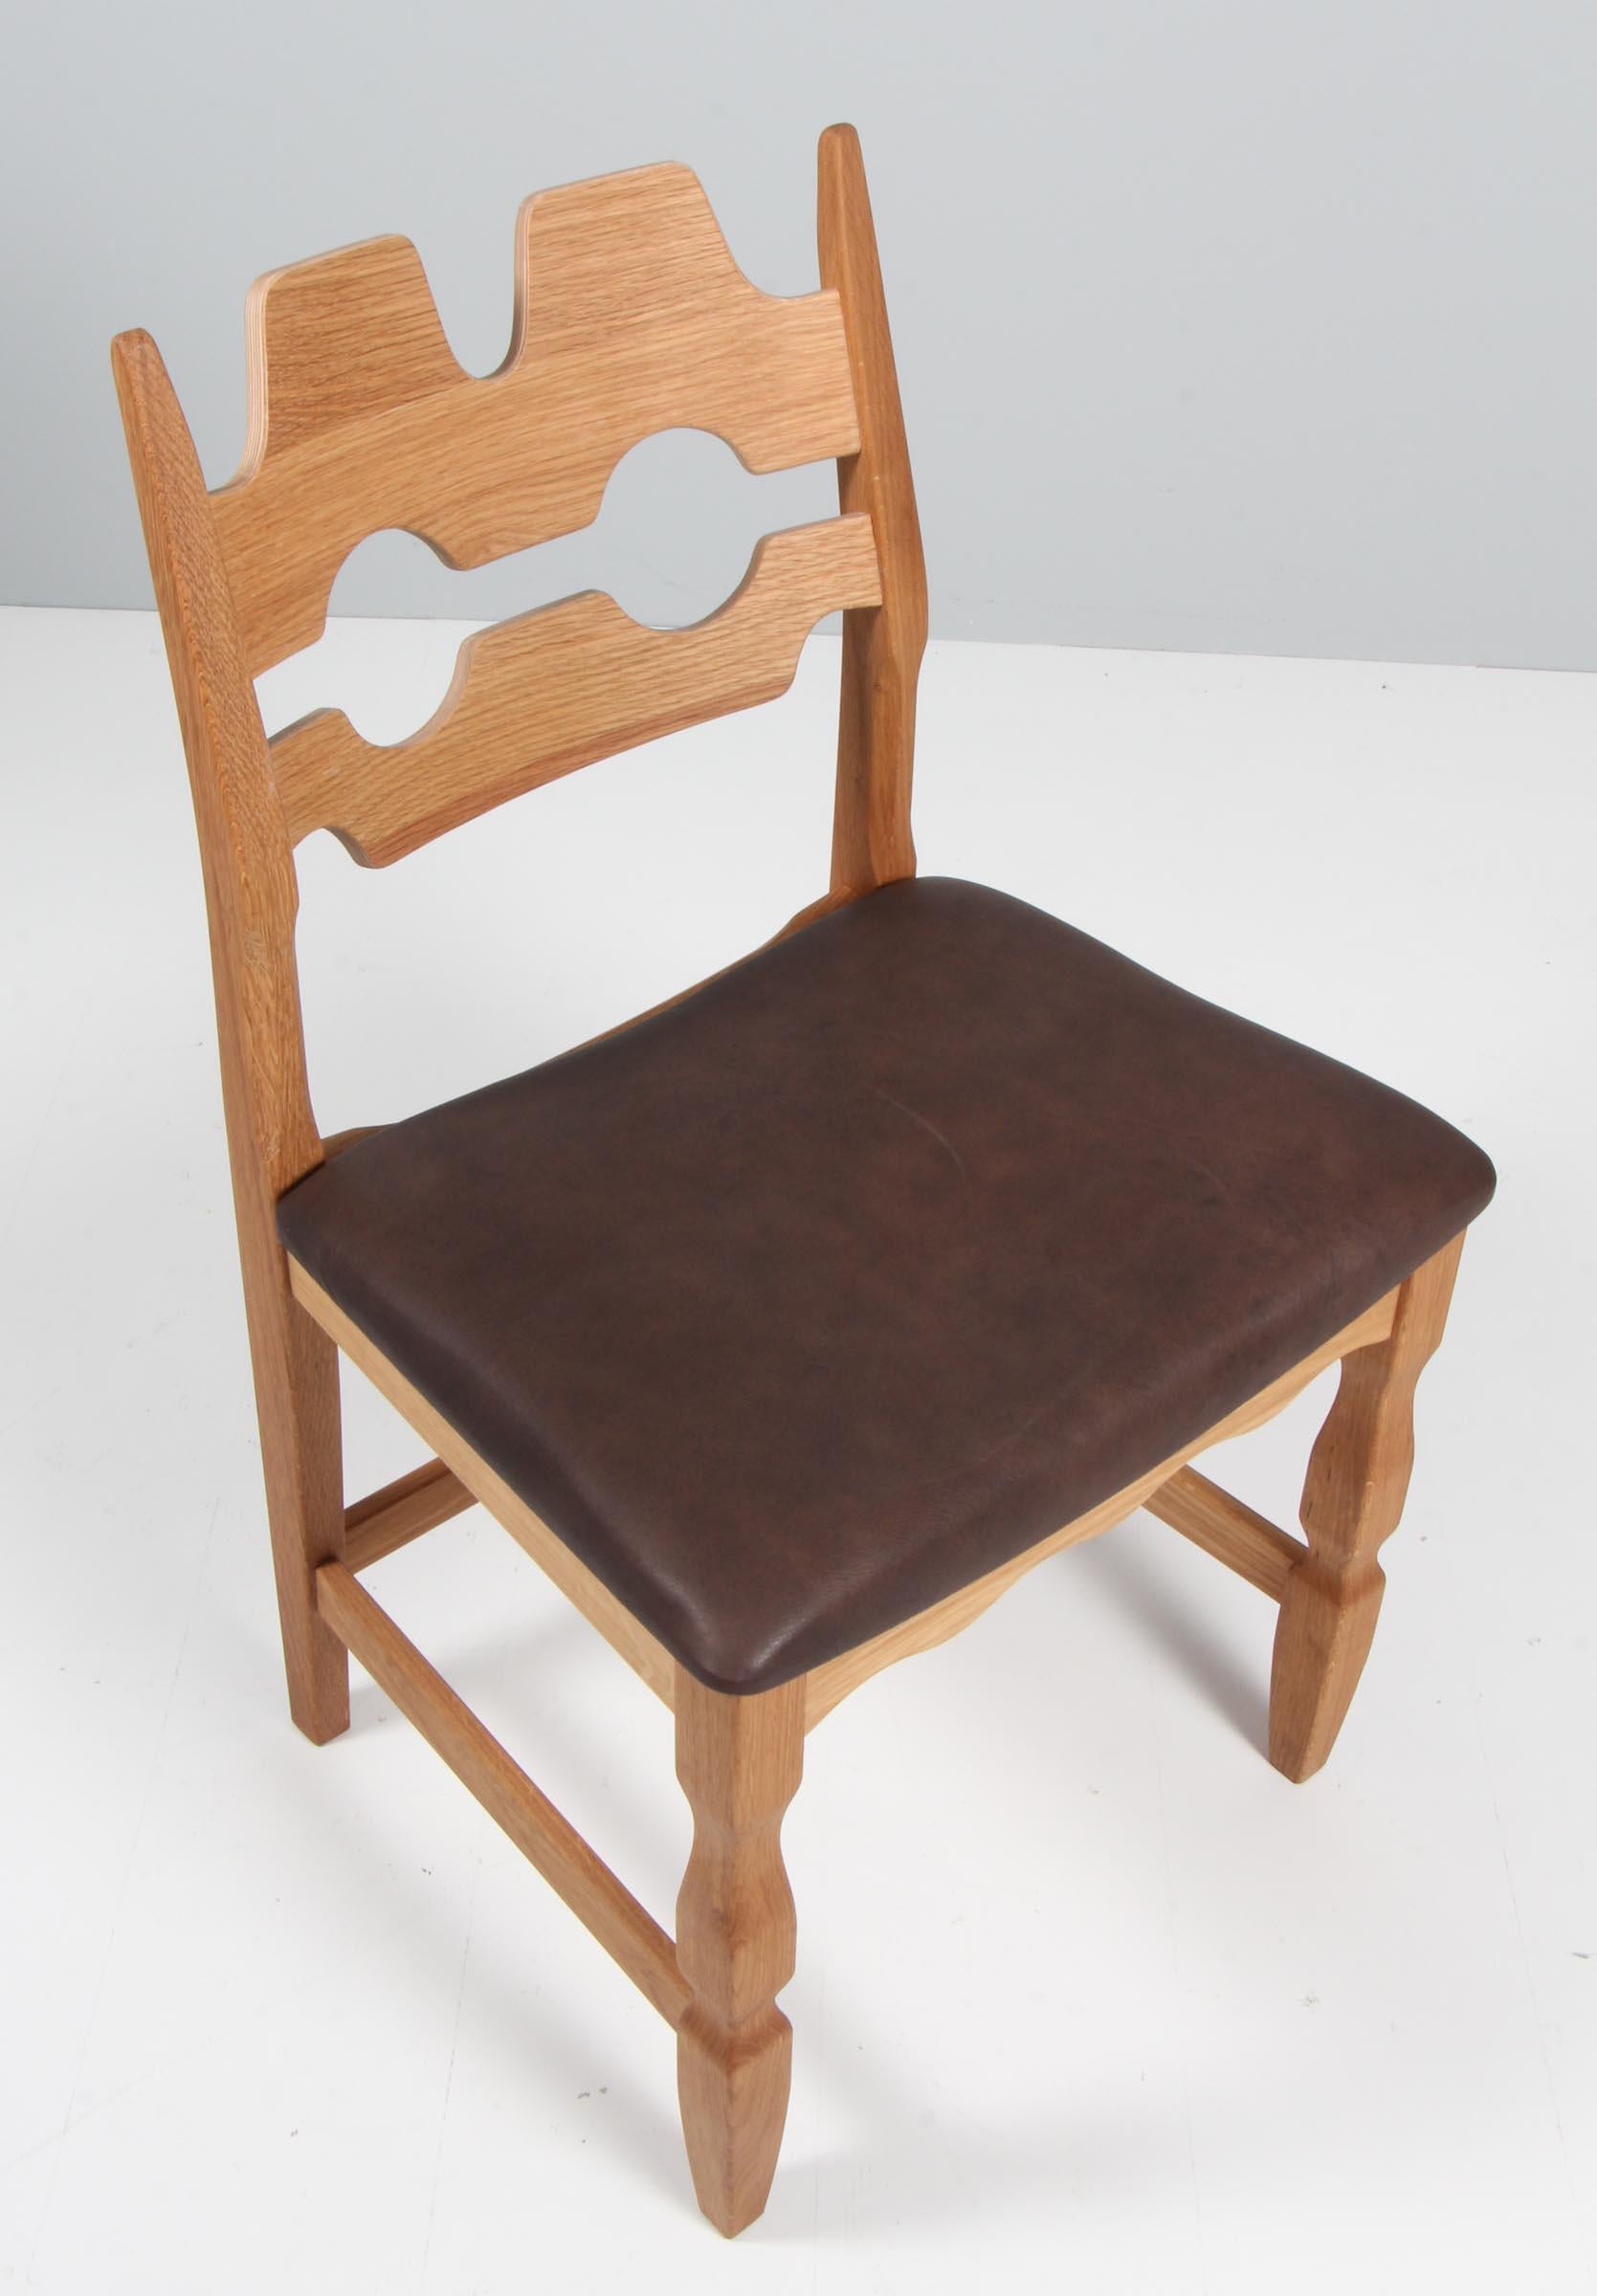 Ensemble de chaises de salle à manger de Henning Kjærnulf, en chêne et cuir aniline mokka latina.

Un design rafraîchissant où le baroque audacieux se marie bien avec le modernisme du milieu du siècle.

Modèle : Lame de rasoir

Réalisé par Another